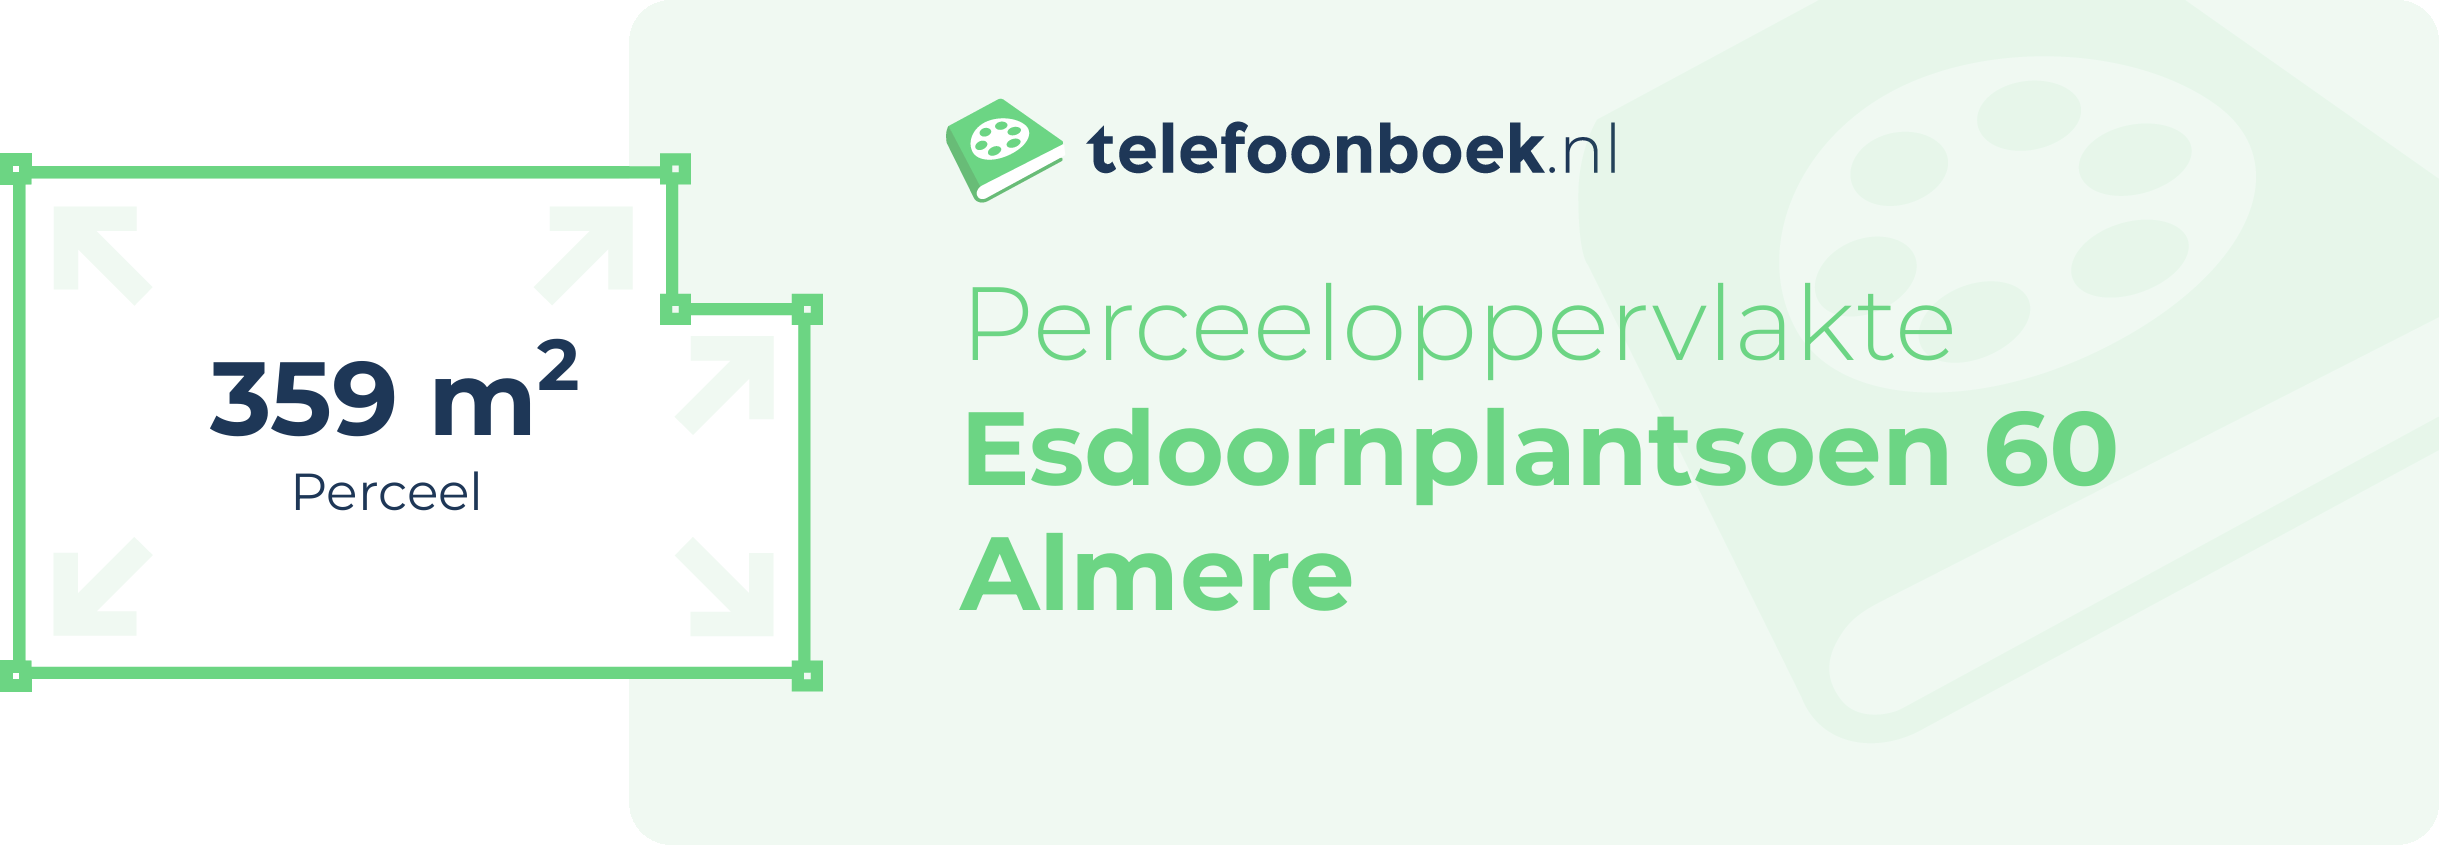 Perceeloppervlakte Esdoornplantsoen 60 Almere